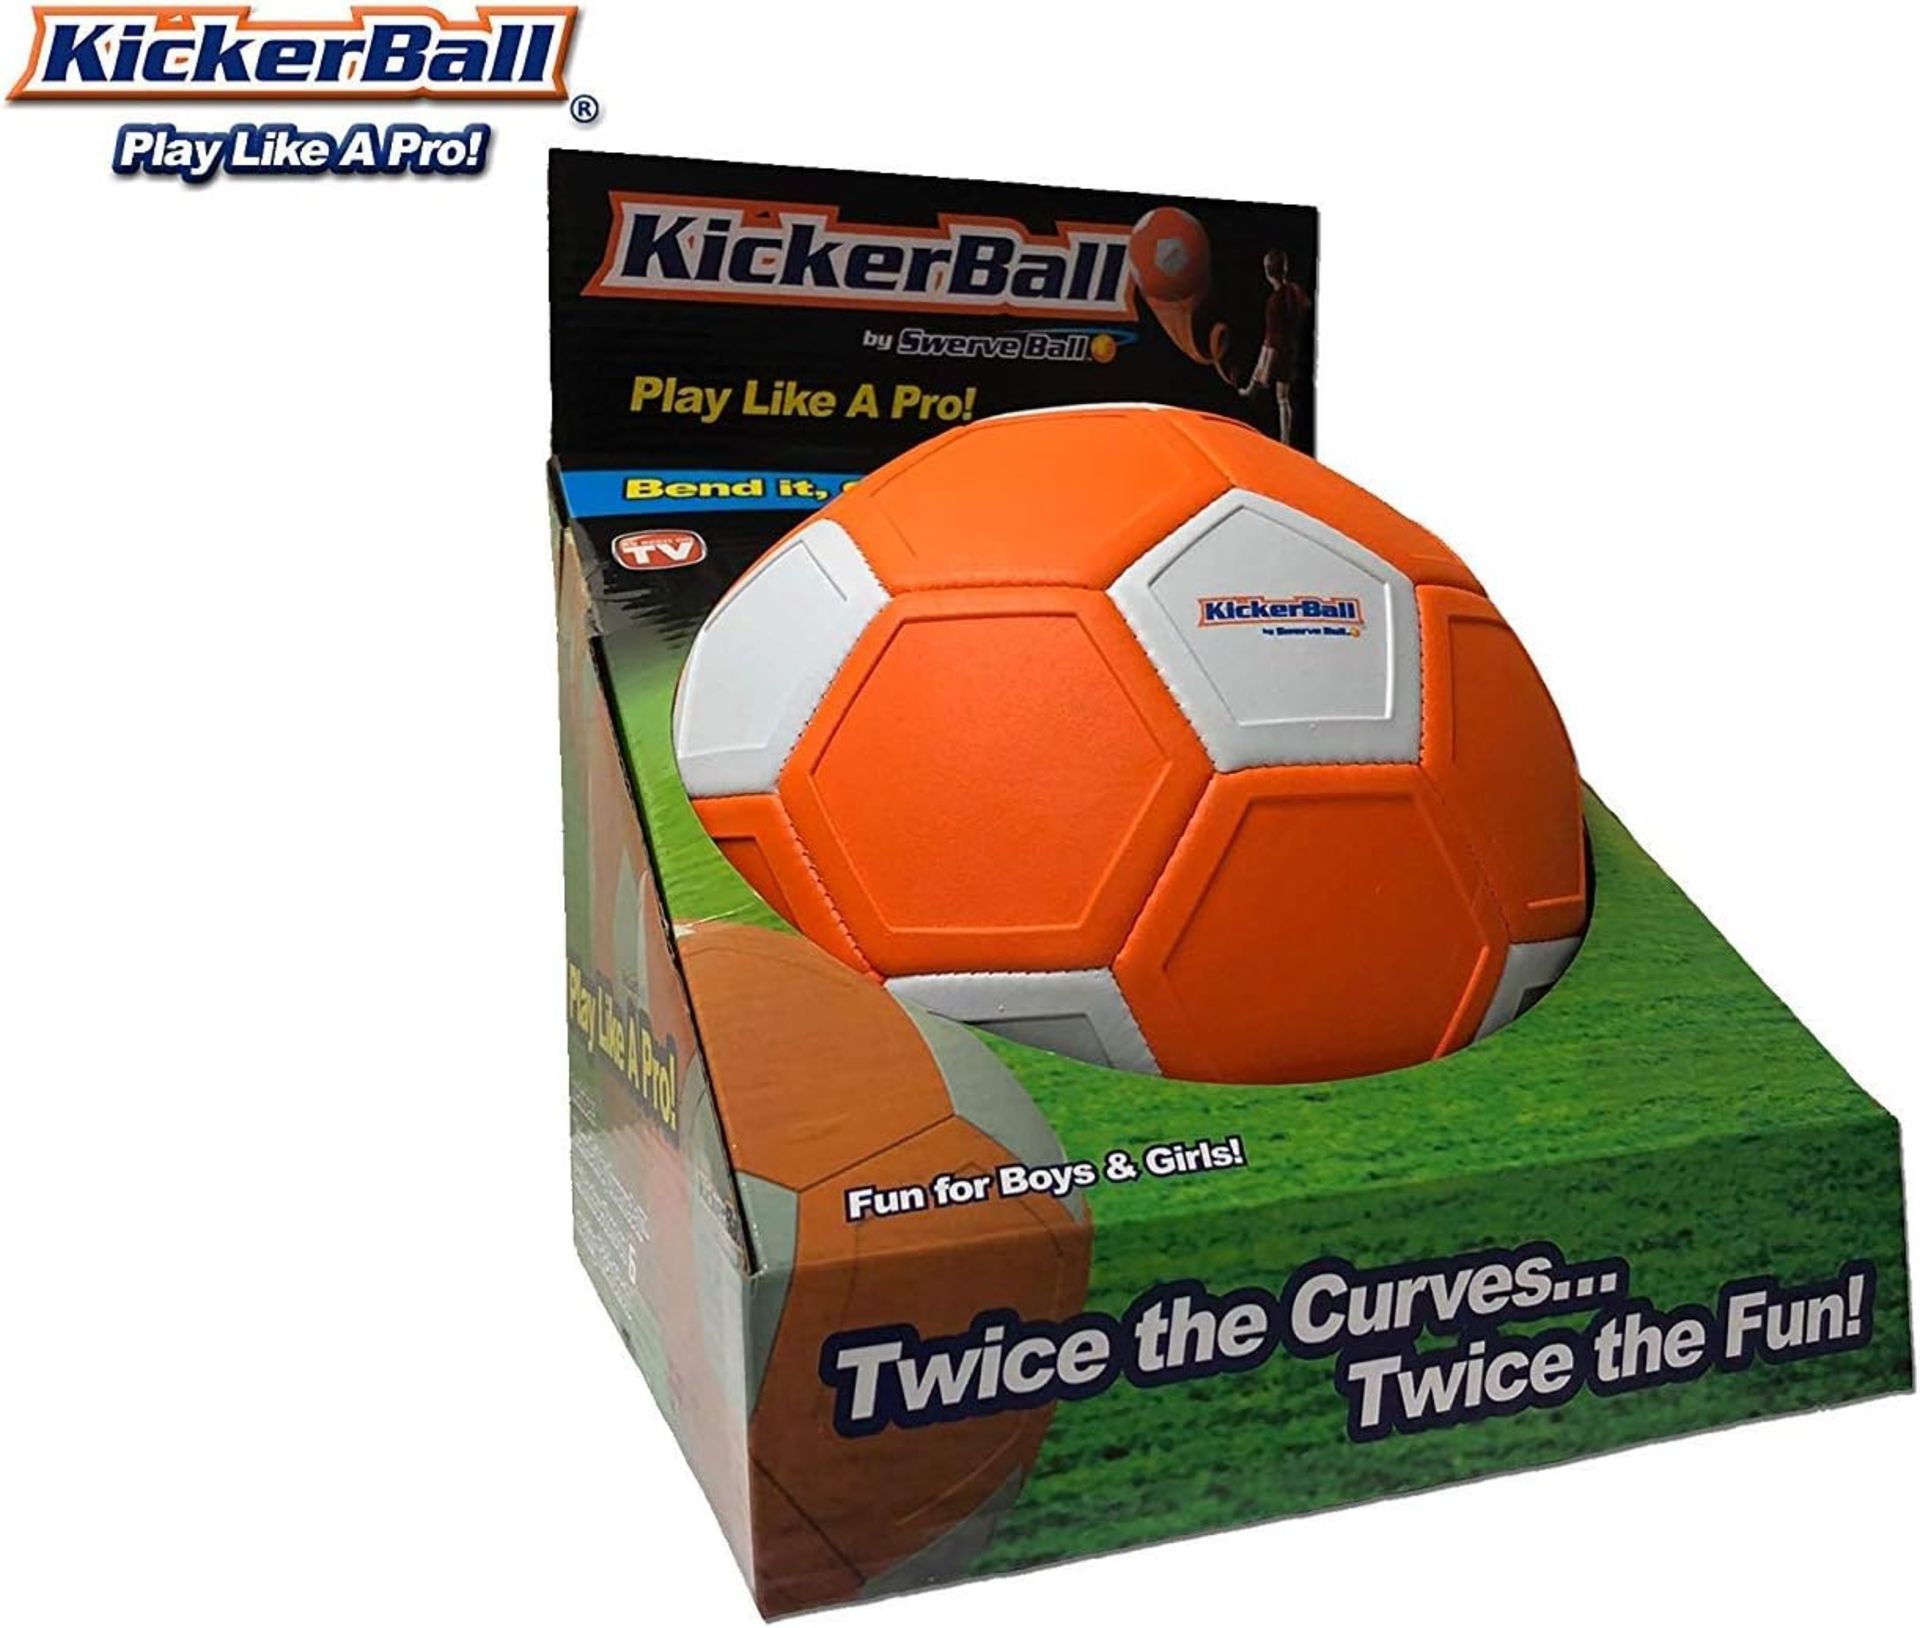 KICKER BALL Kinder Ballon02 Der Ball plays How EIN Profi – known aus dem TV, Orange